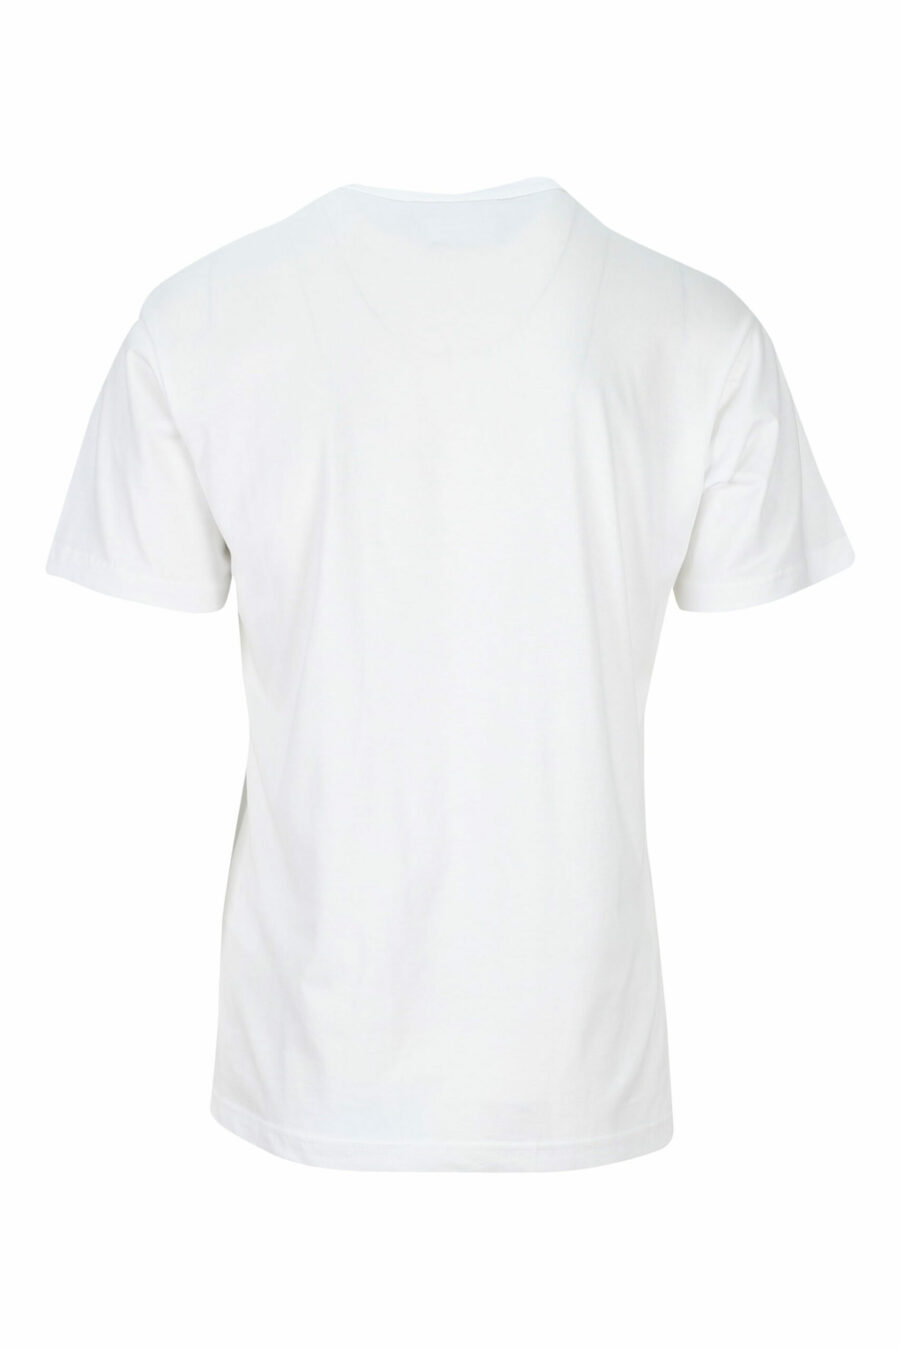 Weißes T-Shirt mit schwarzem Maxilogo "Stückzahl" - 8052019468663 1 skaliert